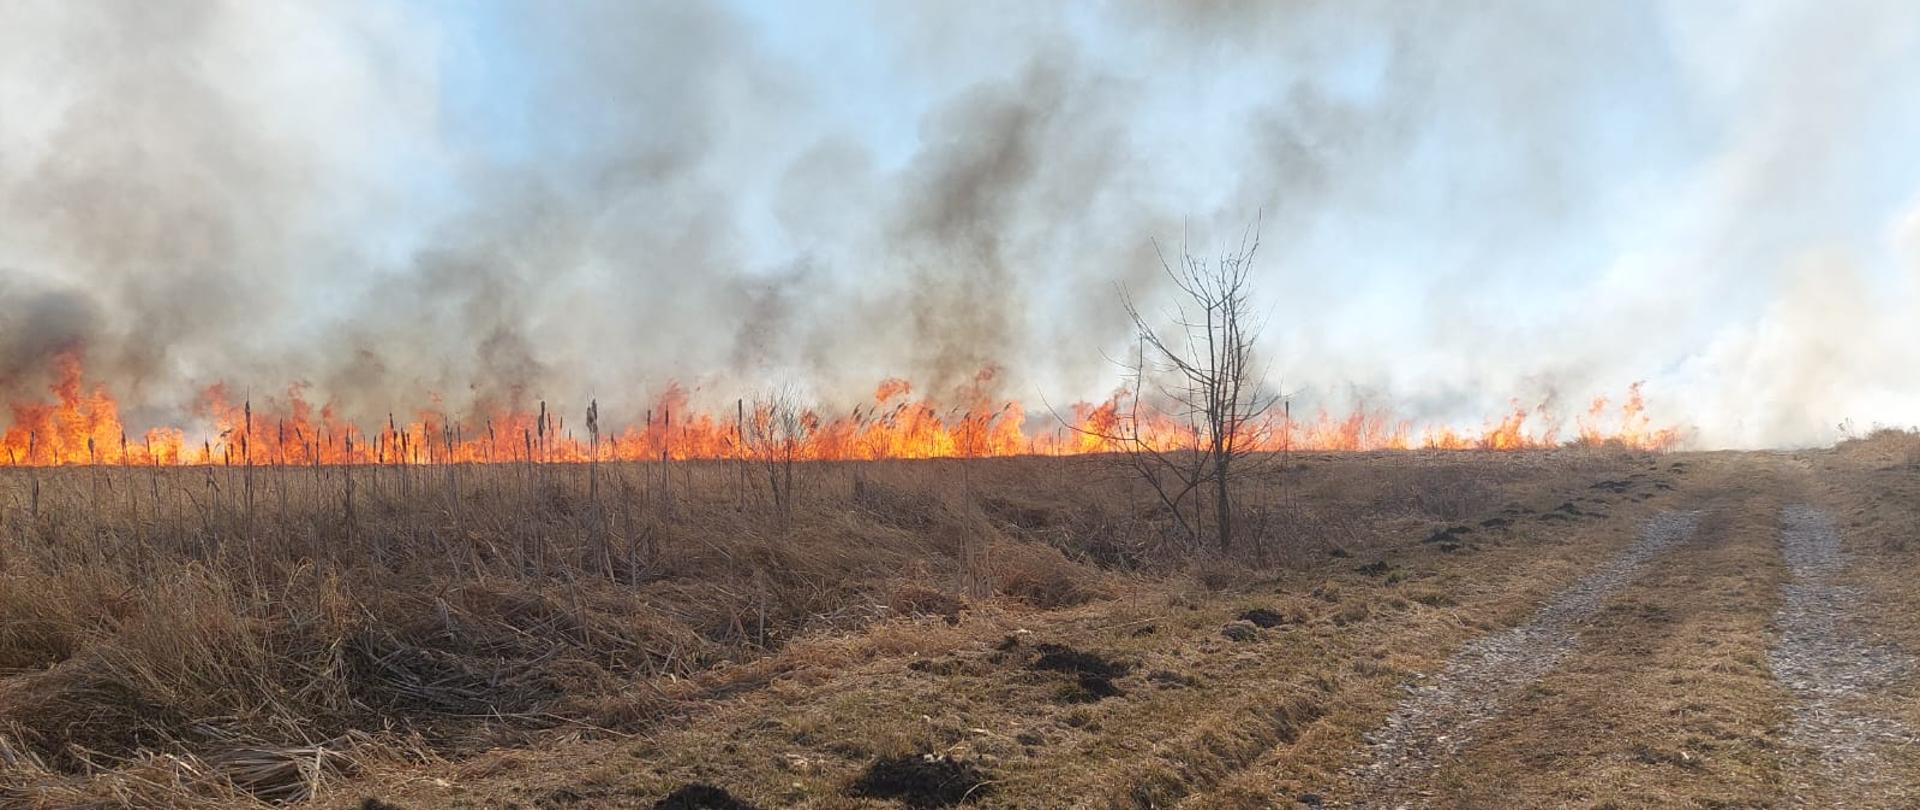 Na zdjęciu widać wysokie płomienie powstałe w wyniku pożaru traw oraz gęsty ciemny dym.